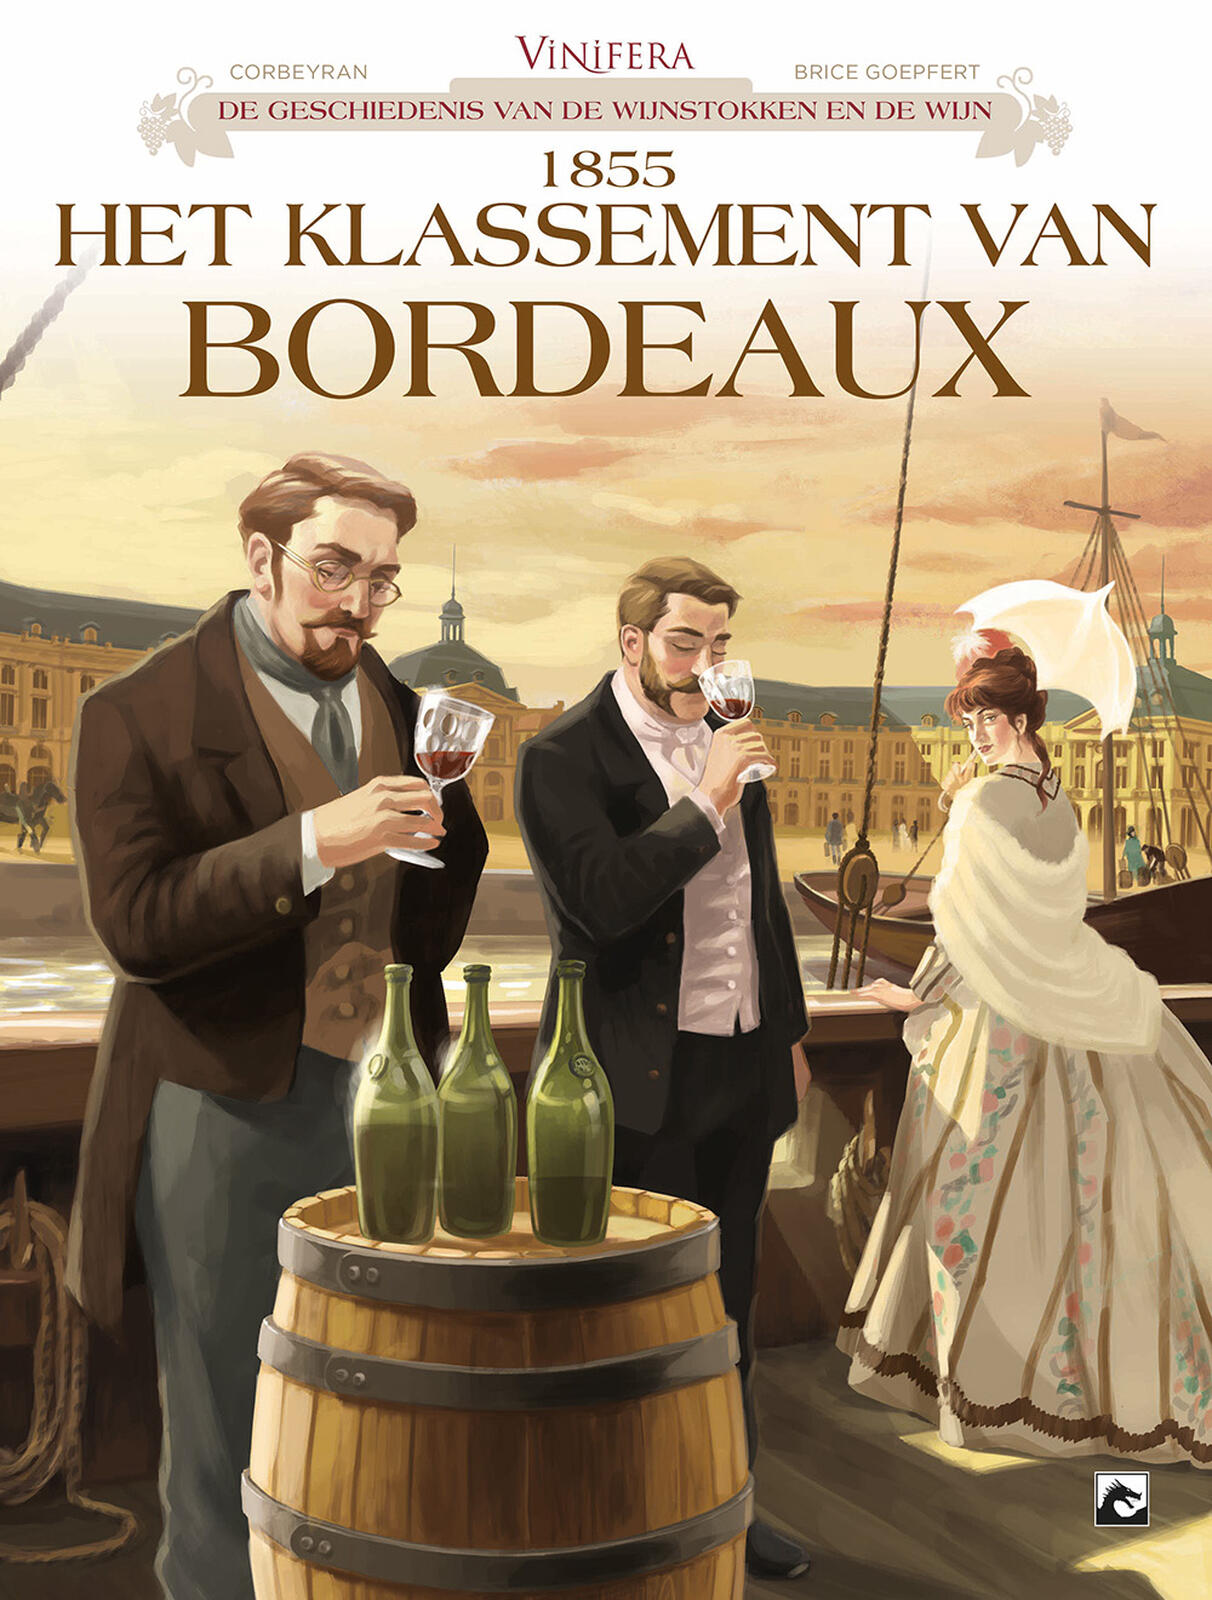 Vinifera - De Geschiedenis van de Wijnstokken en de Wijn 3: 1855, Het Klassement van Bordeaux